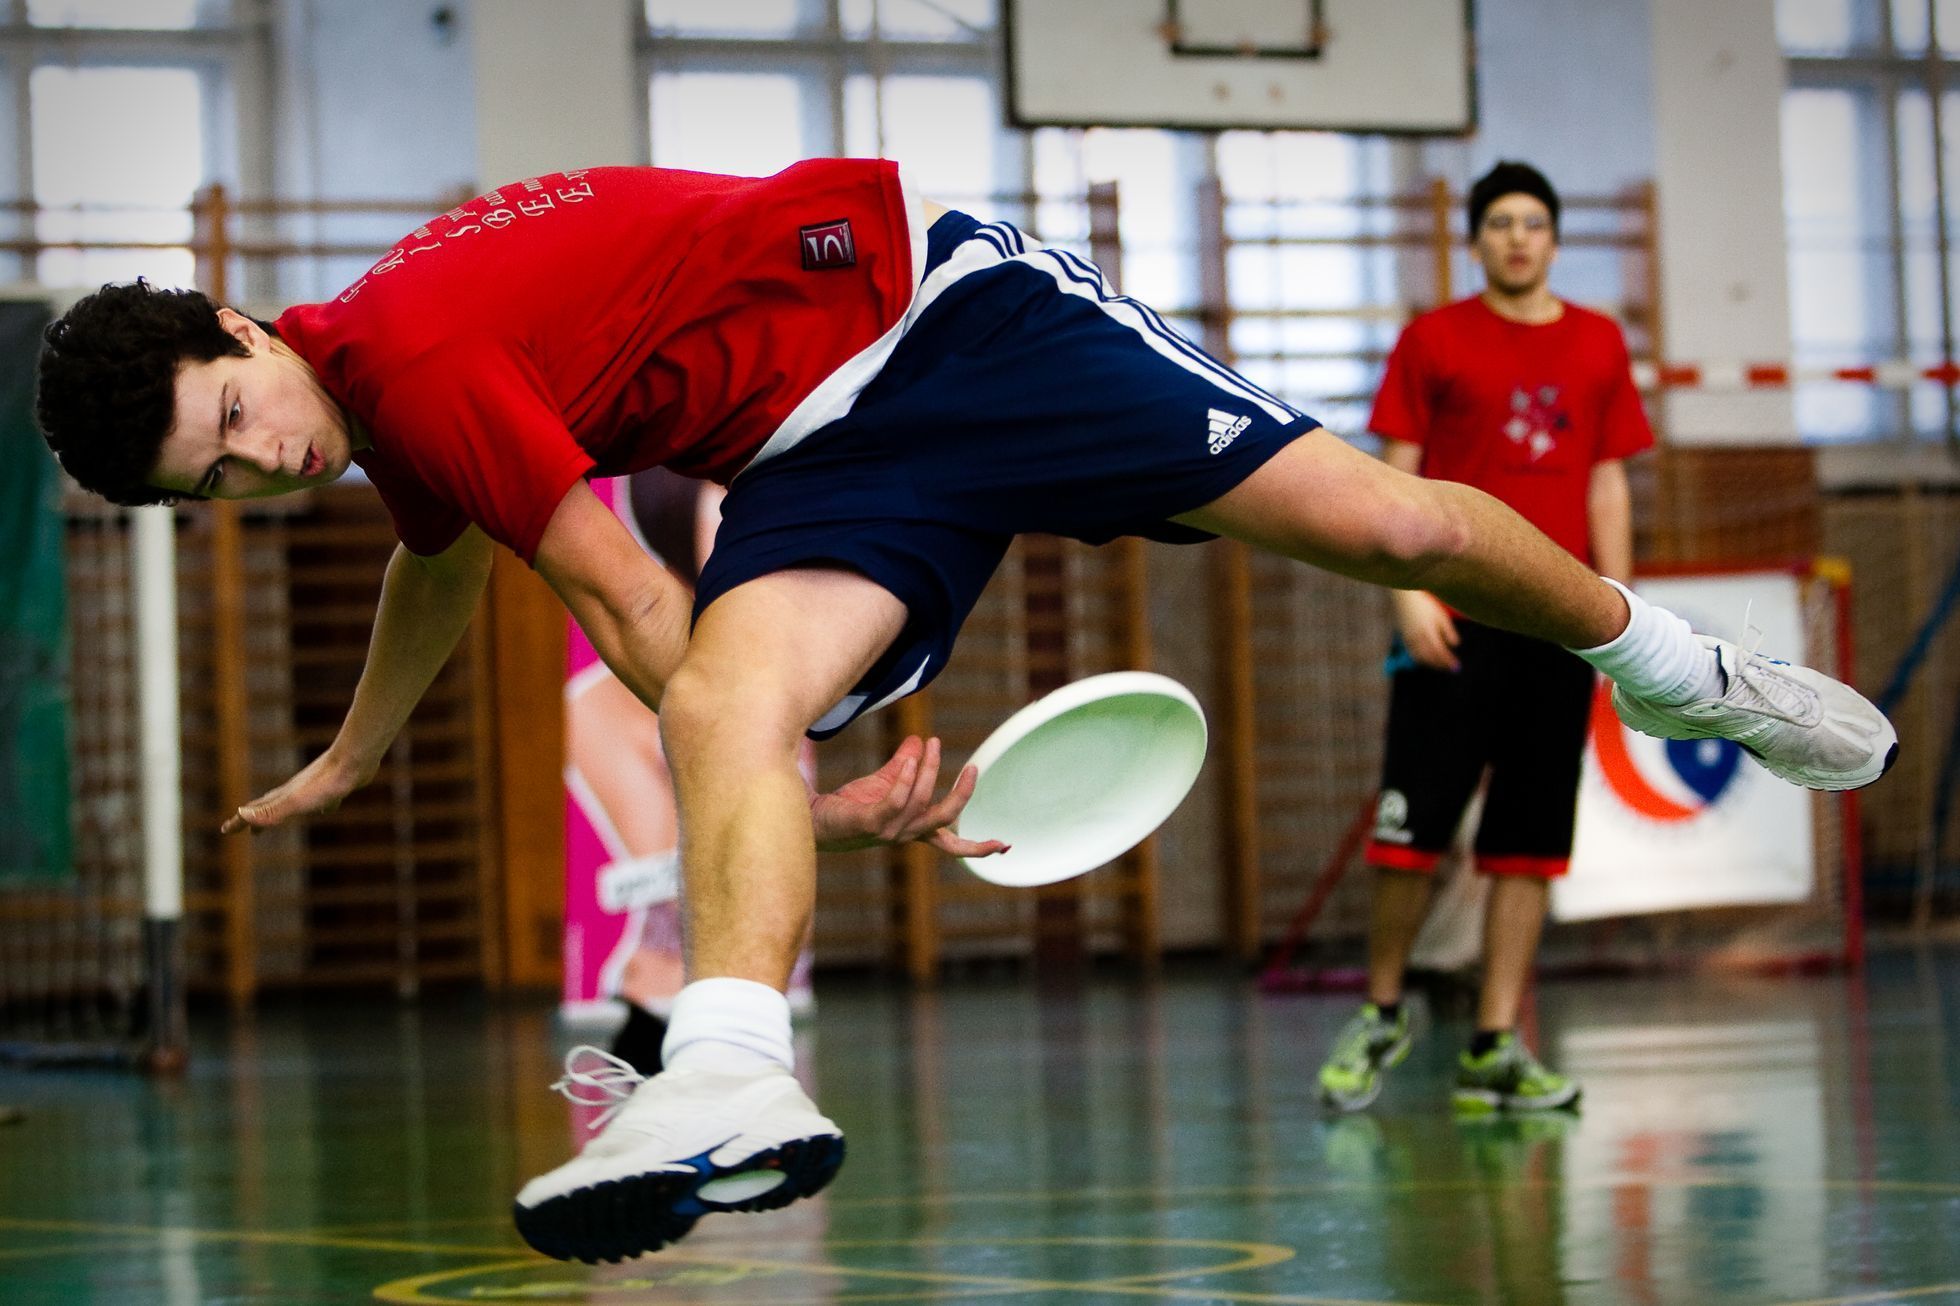 Pavel Baranyk, freestyle frisbee